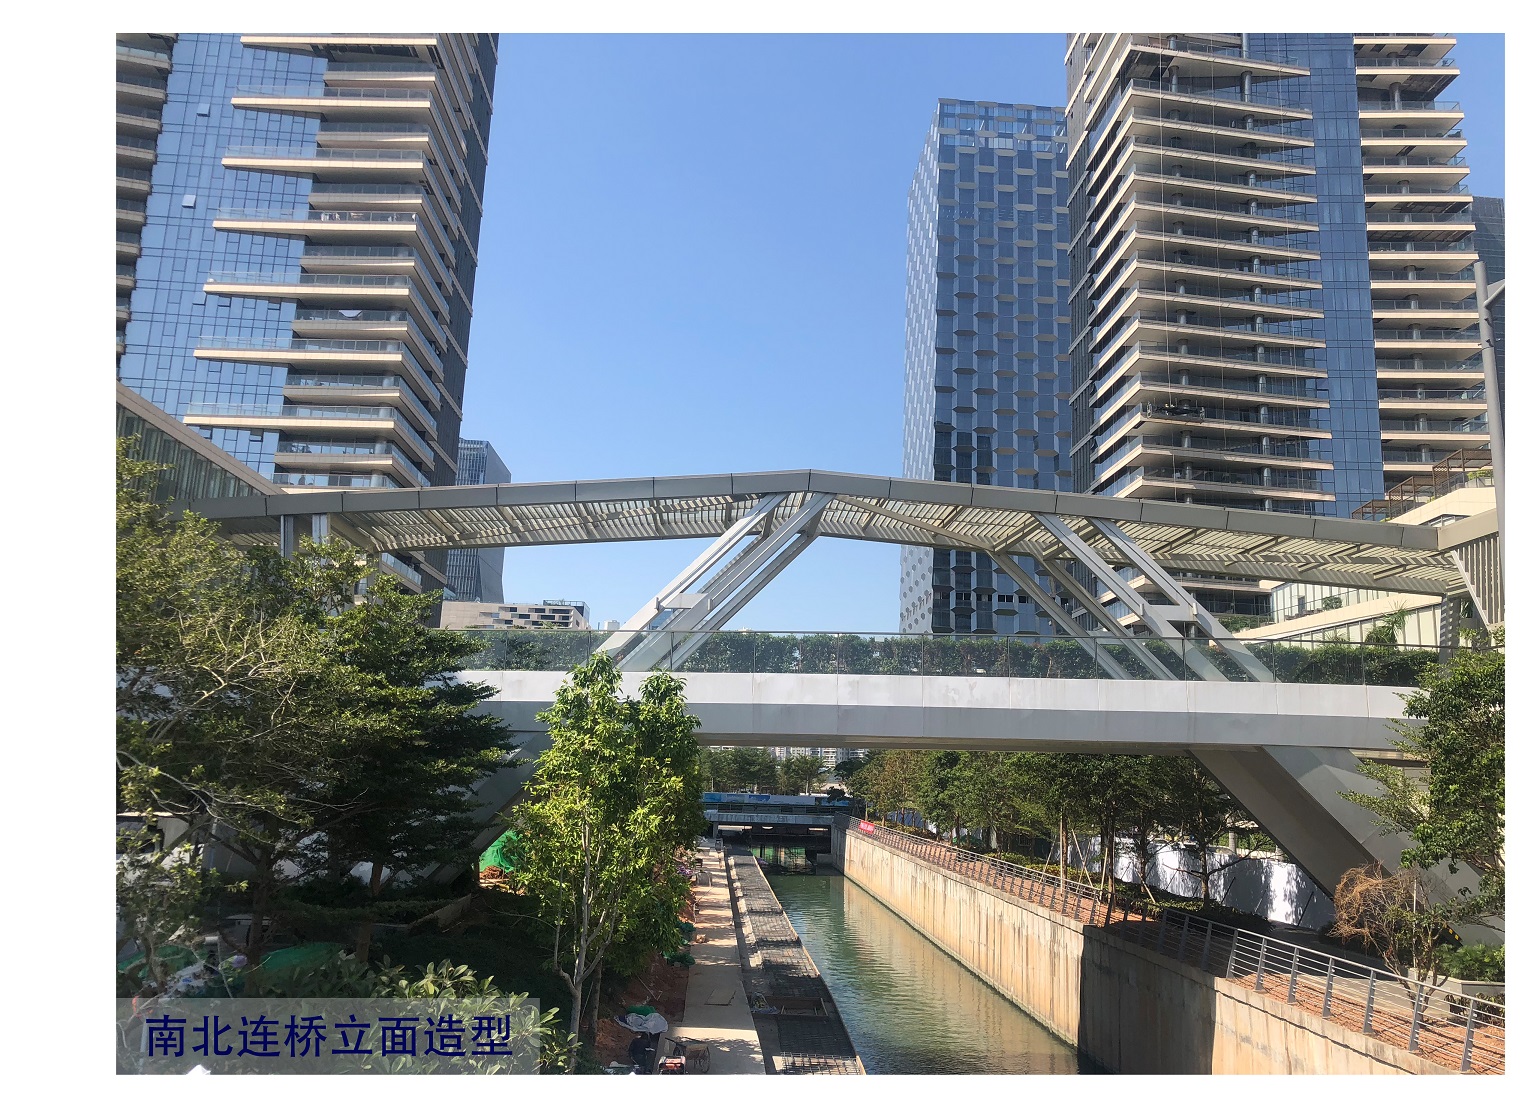 鹏瑞深圳湾壹号广场科苑人行天桥连桥作为一个多功能的空中人行系统